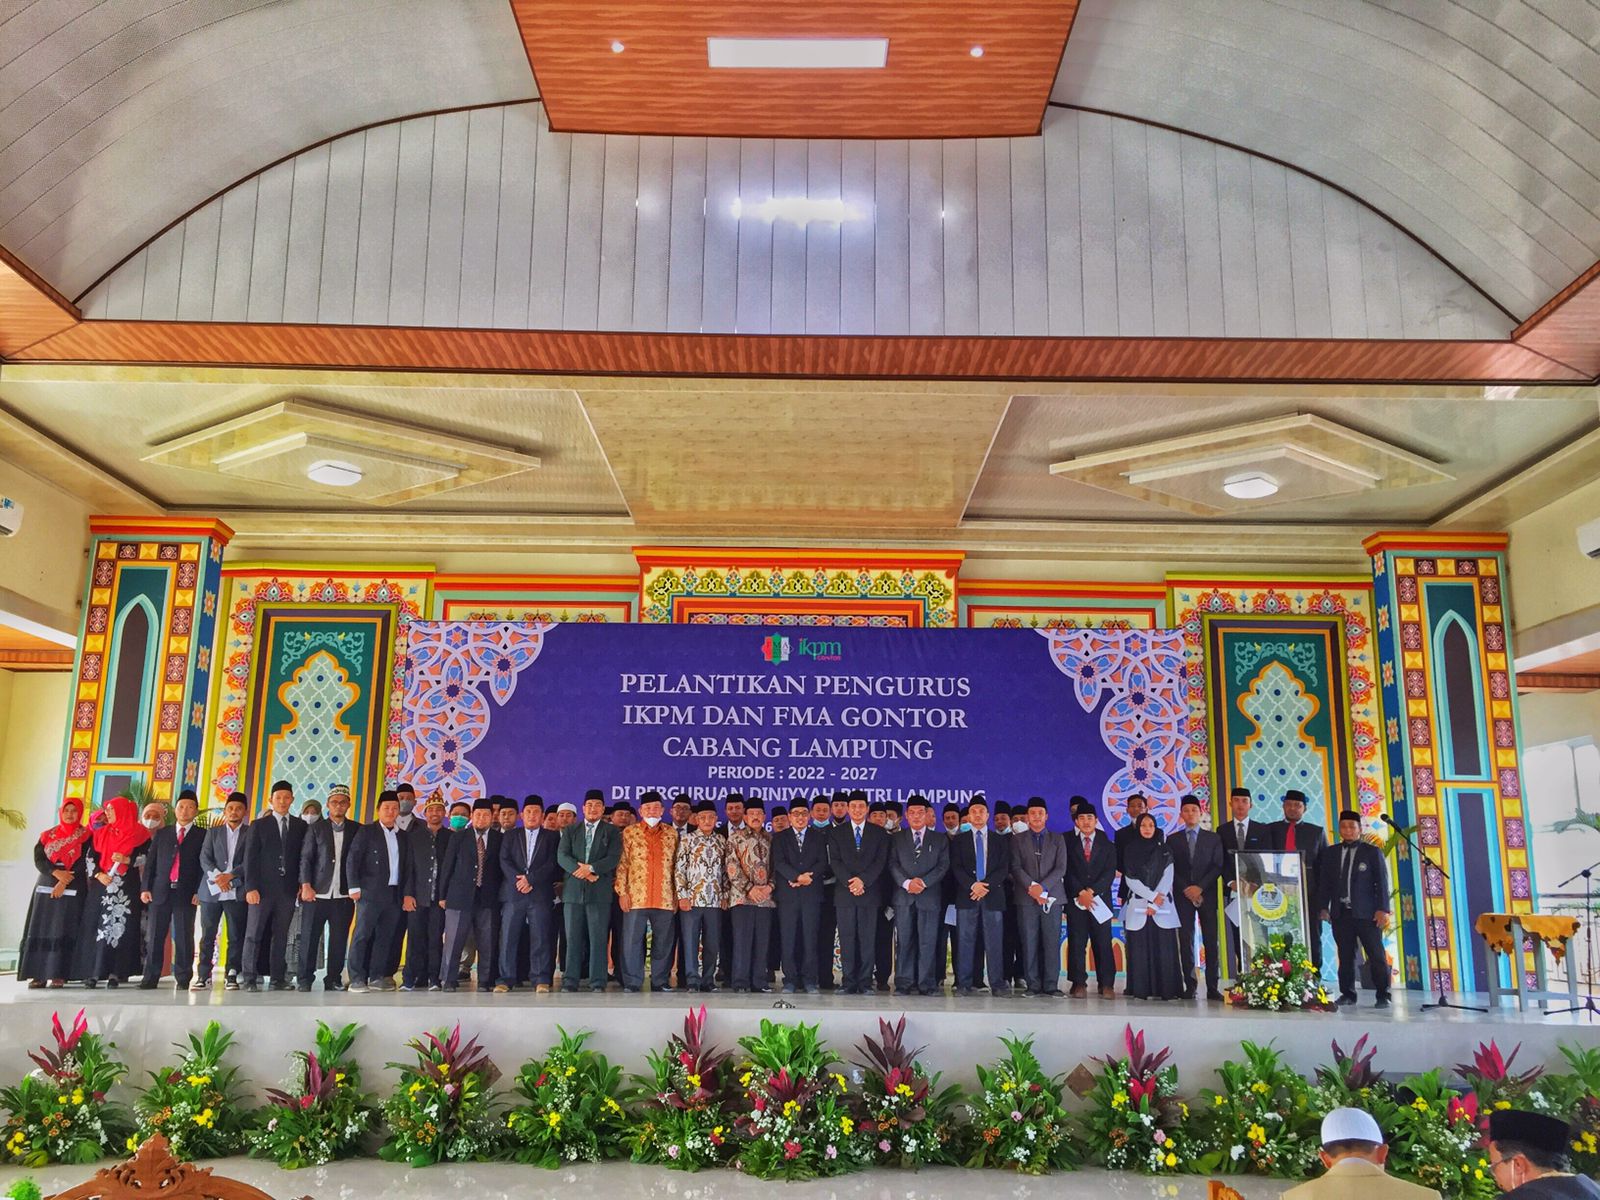 PP IKPM Gontor Menghadiri Pelantikan Pengurus IKPM dan FMA Gontor Cabang Lampung Di Perguruan Diniyah Putri Lampung.